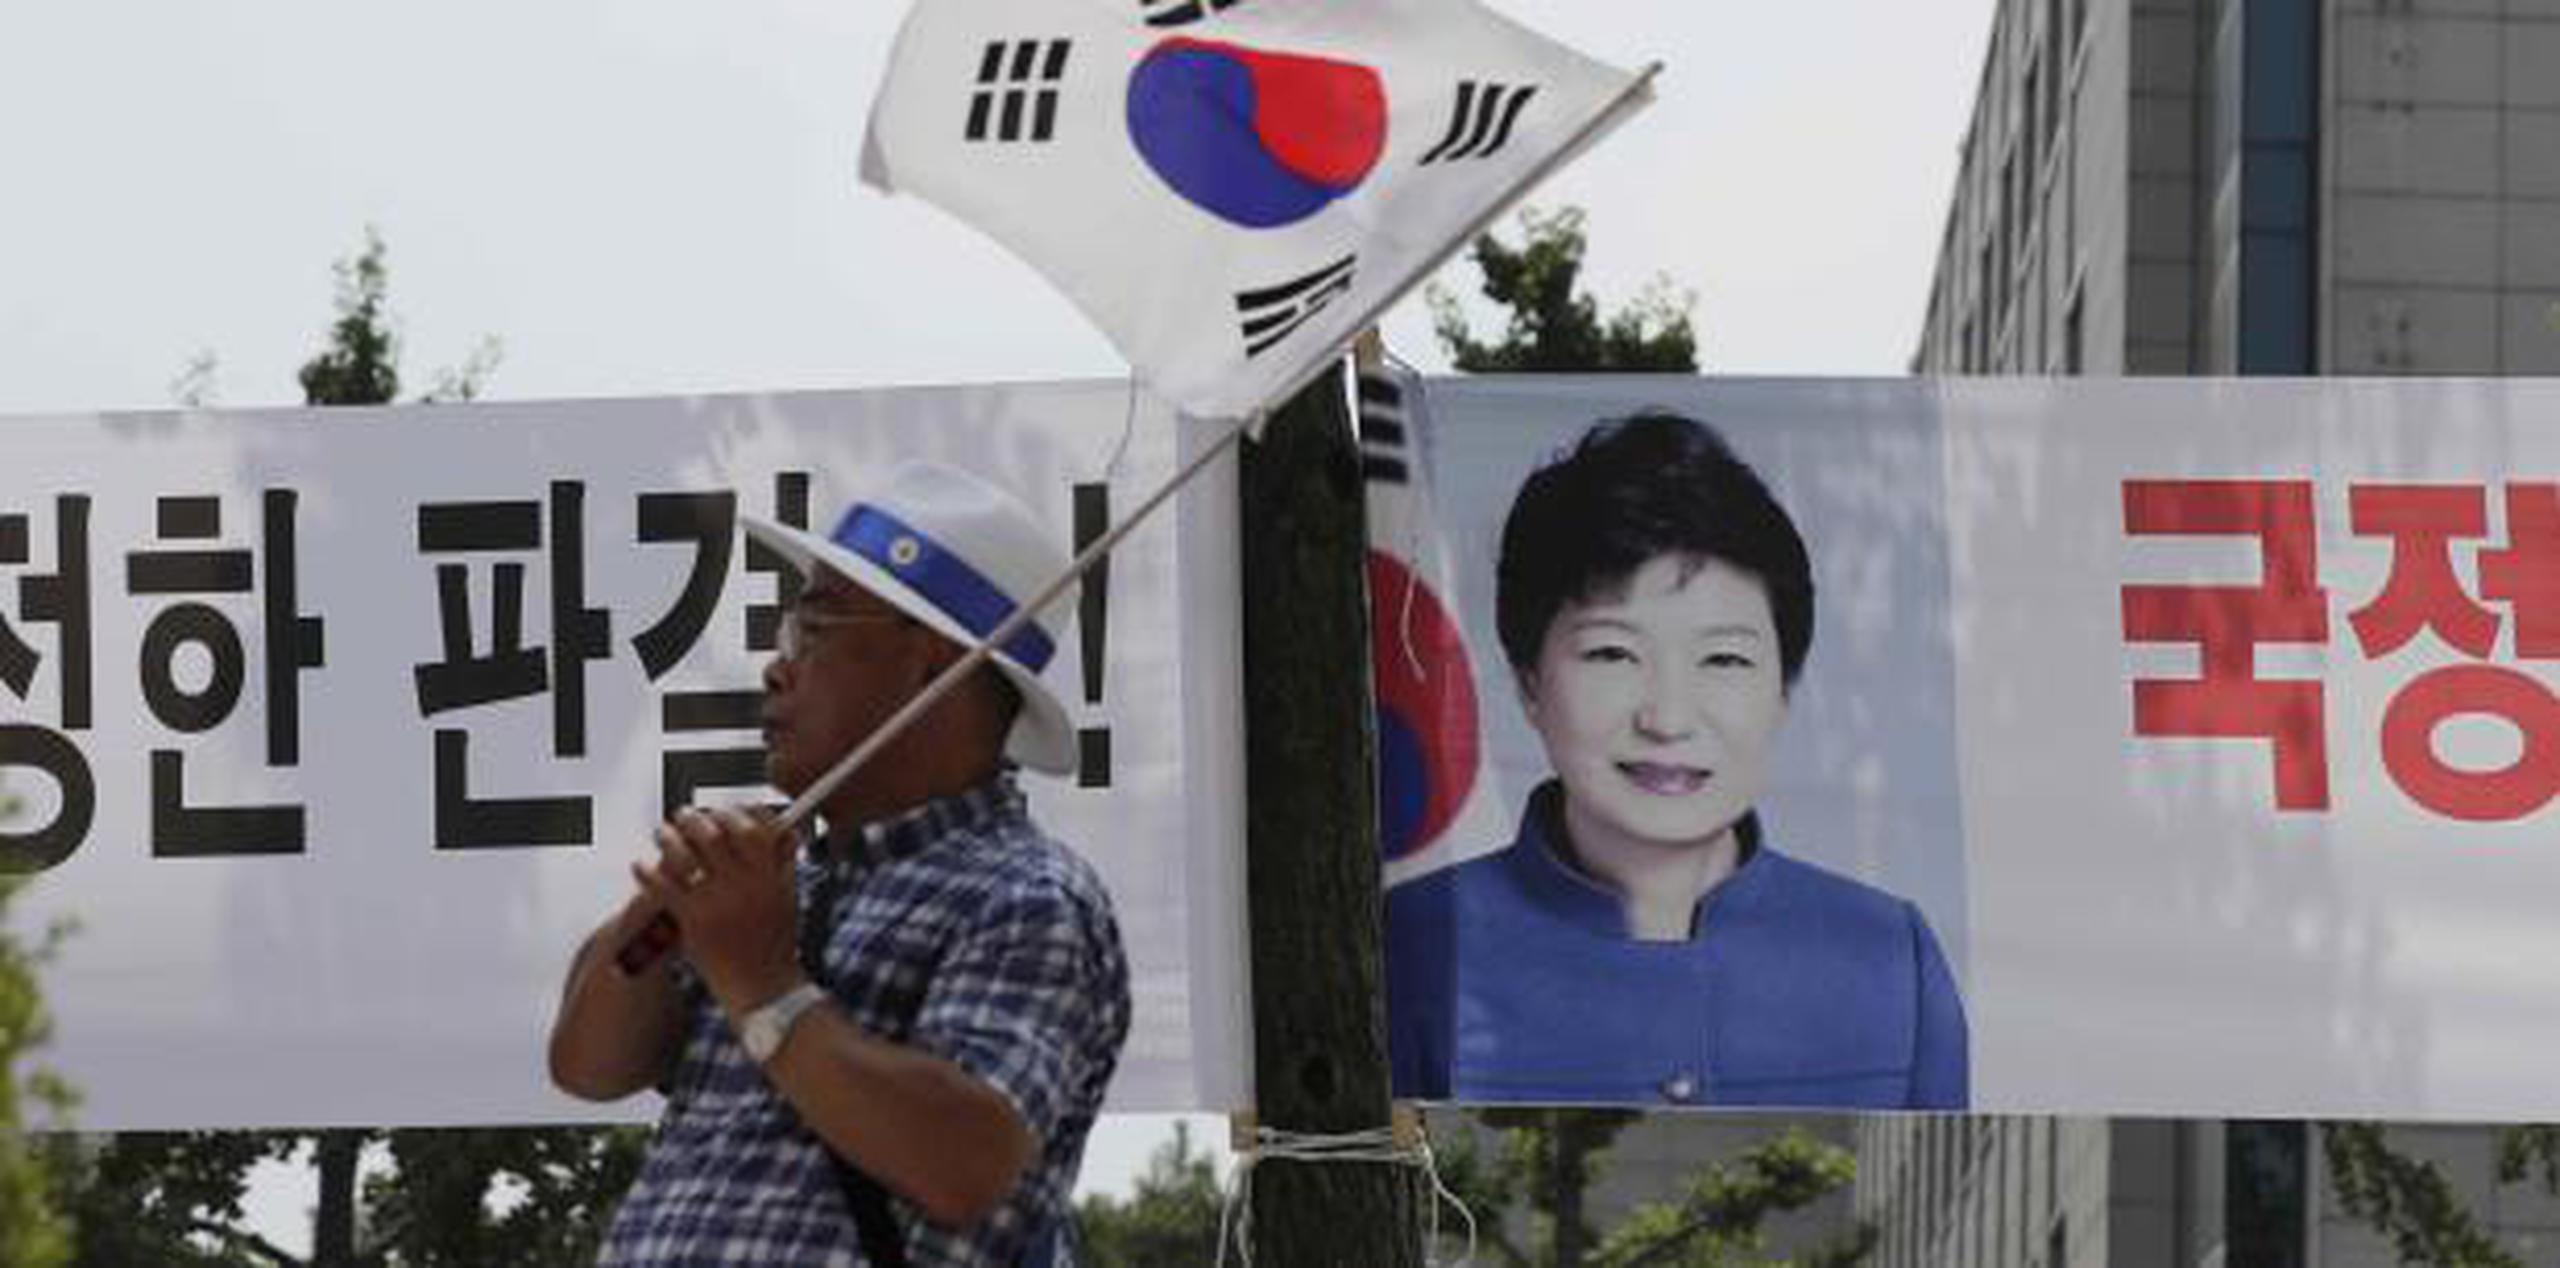 Park ahora enfrenta la posibilidad de pasar más de tres décadas en prisión porque ya cumple una condena de 24 años por un enorme escándalo de corrupción.  (AP)

